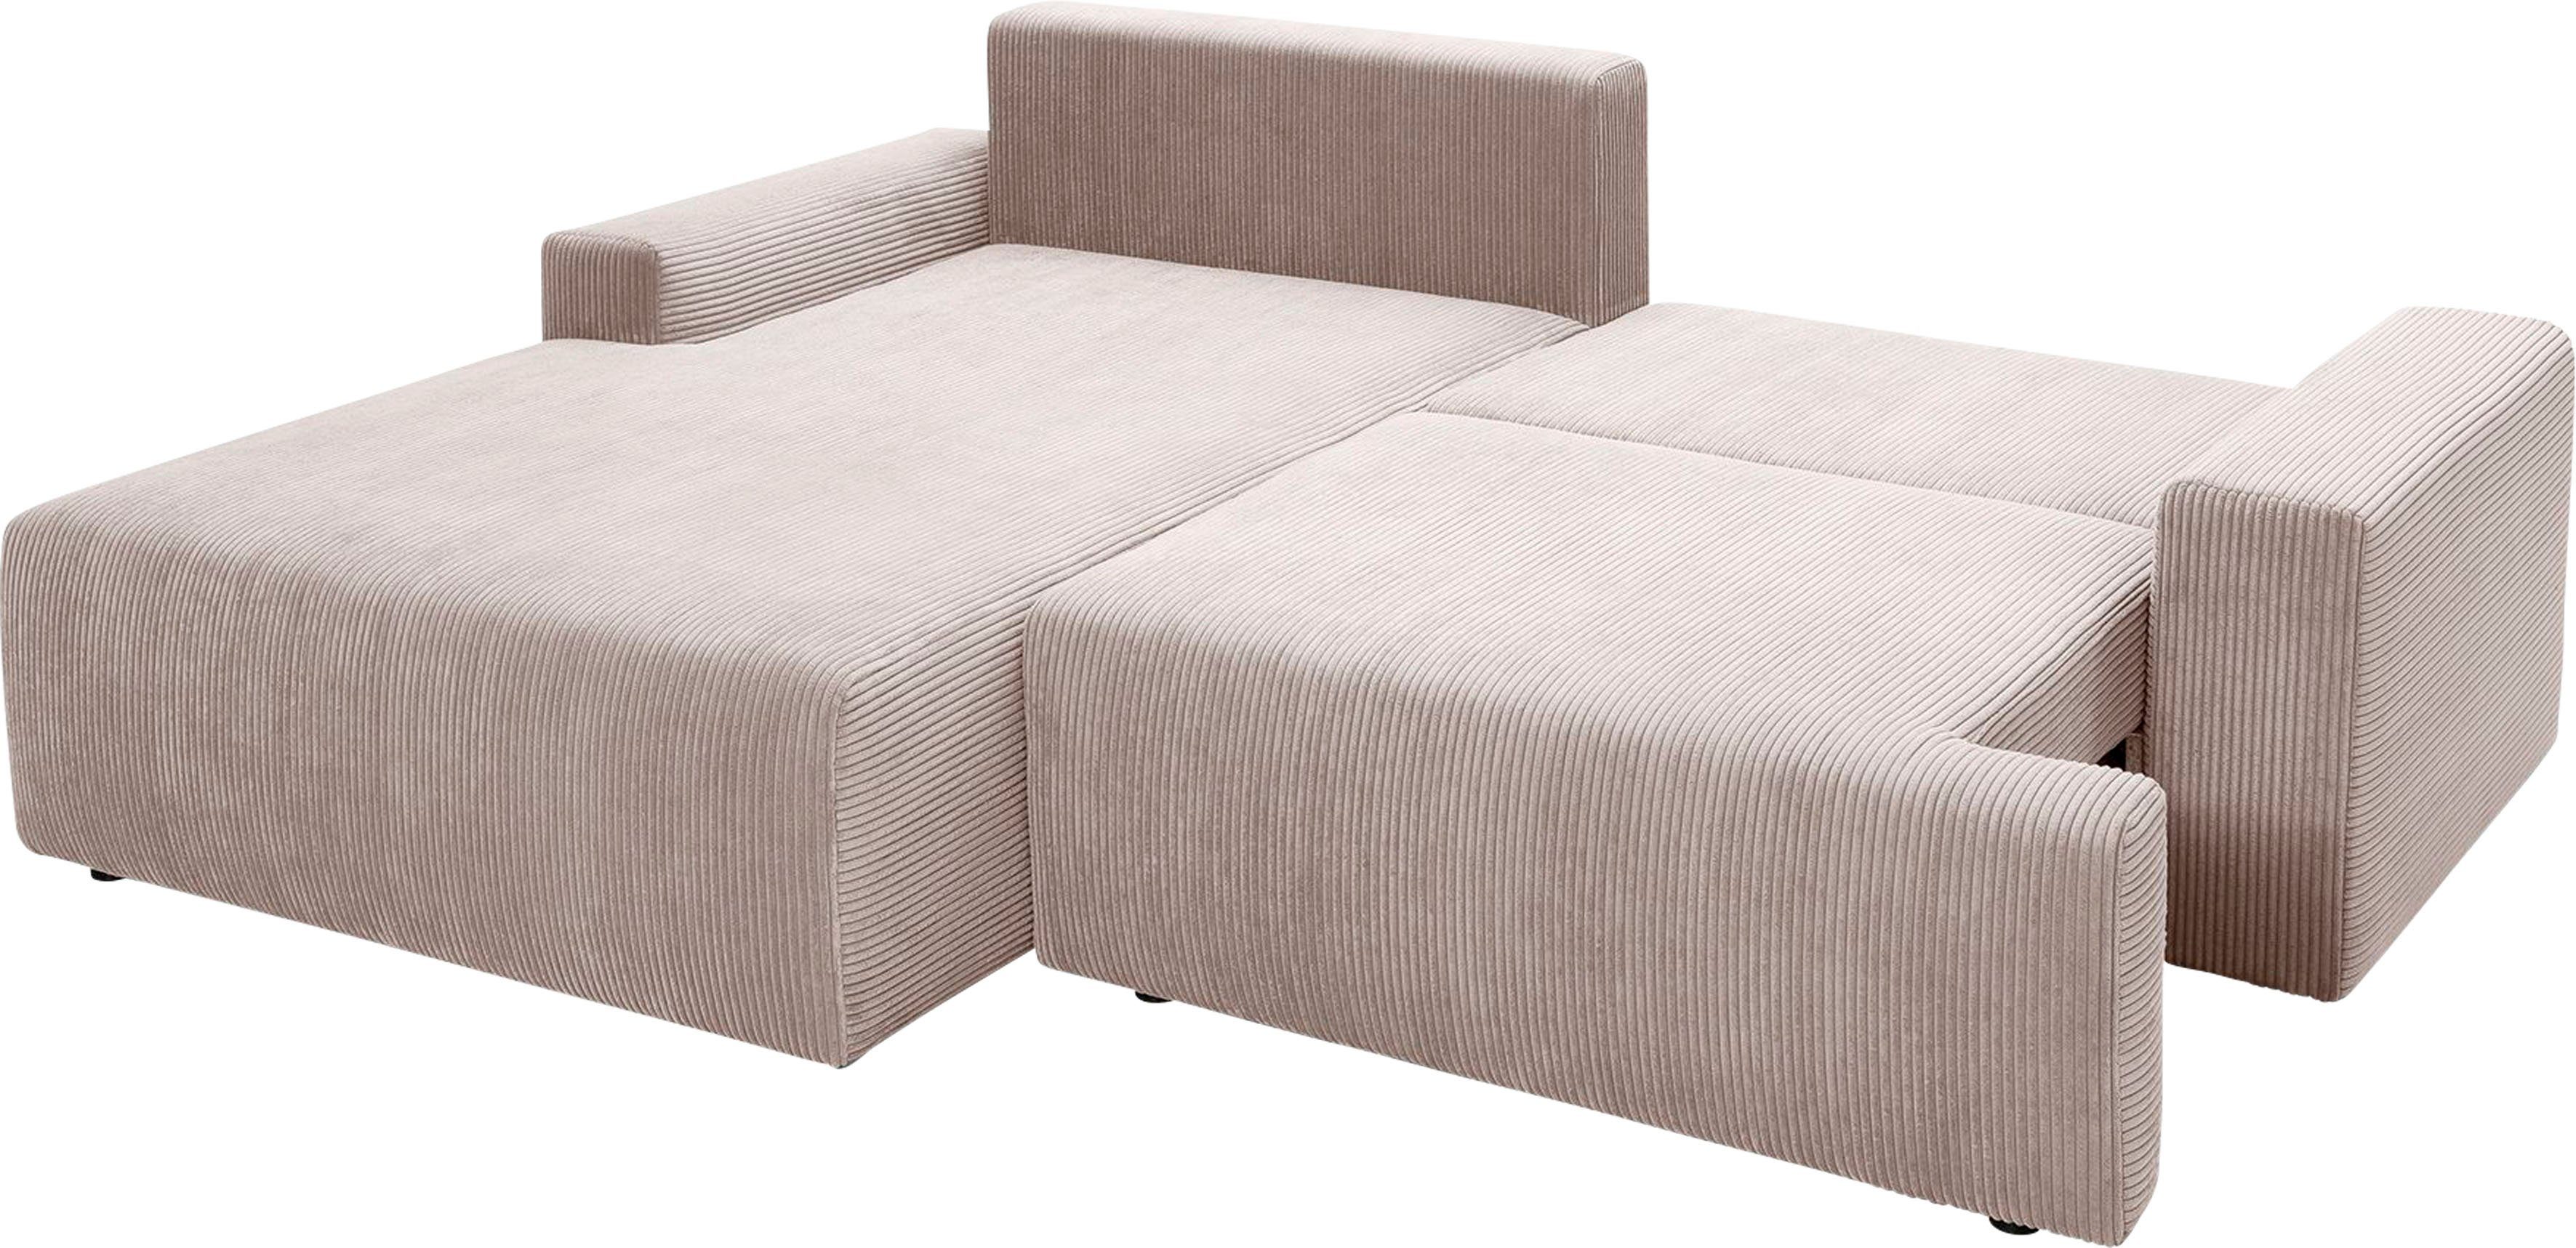 Bettfunktion Cord-Farben Ecksofa sofa Bettkasten beige inklusive und verschiedenen fashion - in Orinoko, exxpo